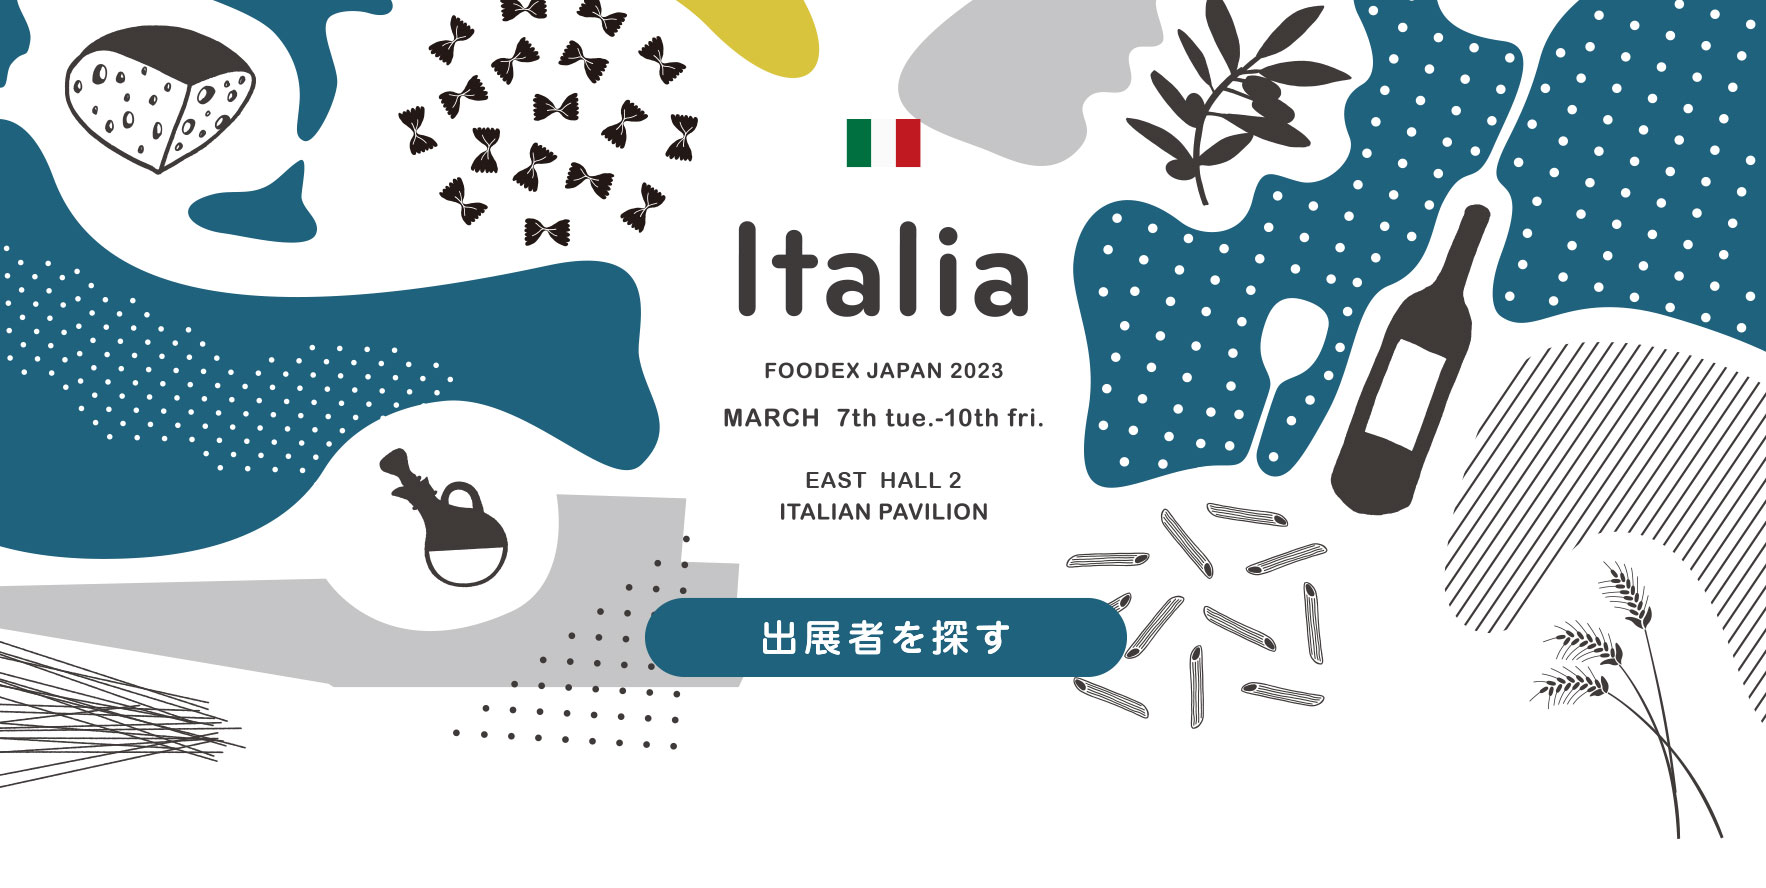 foodex japan 2020 italia pavilion hall3